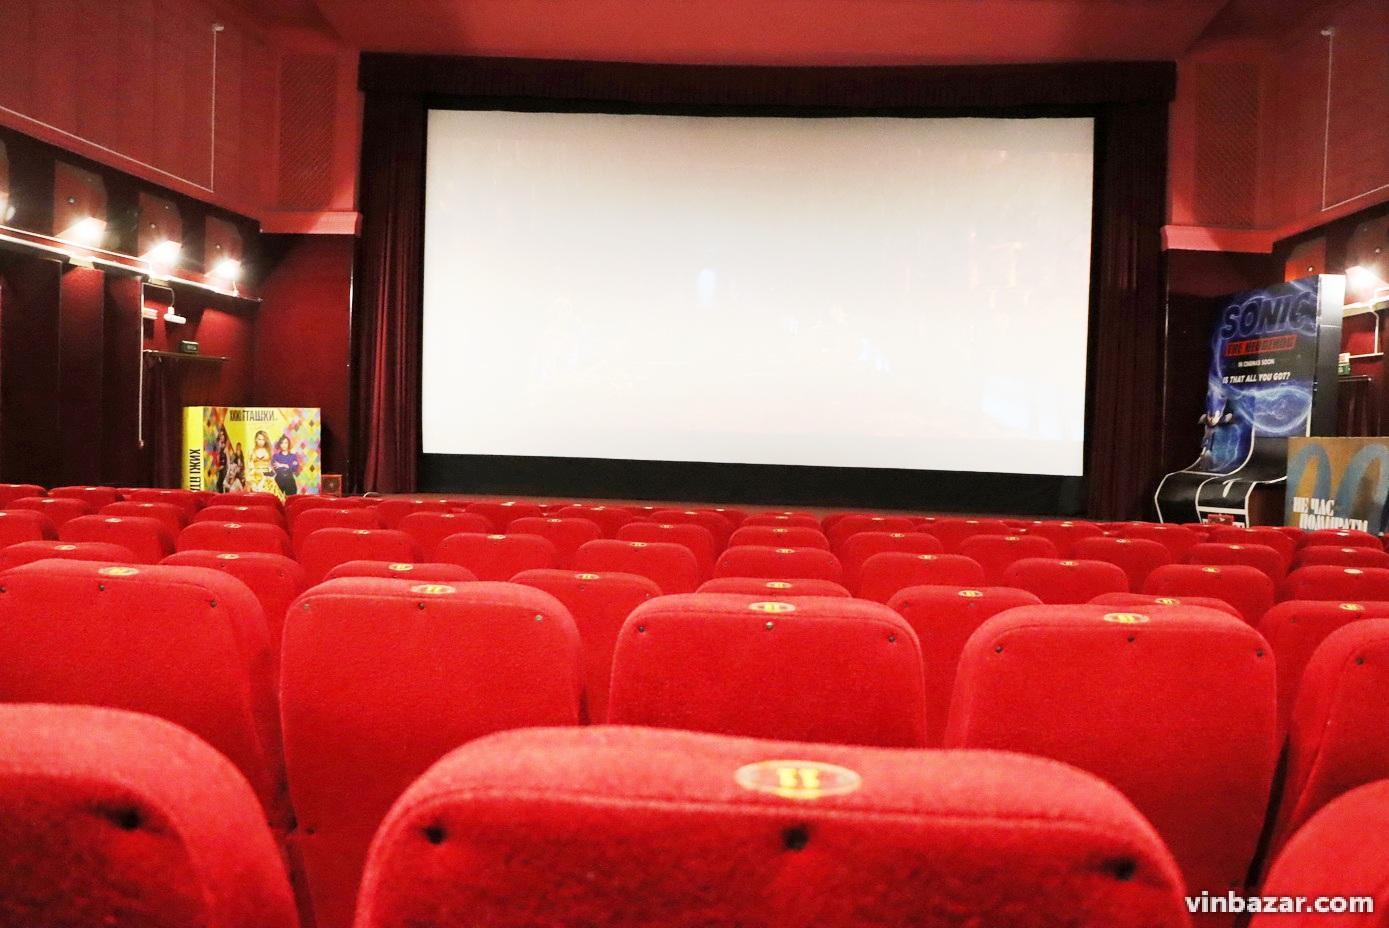 Магія кіно, або закулісне життя найстарішого кінотеатру Вінниці (Фото)